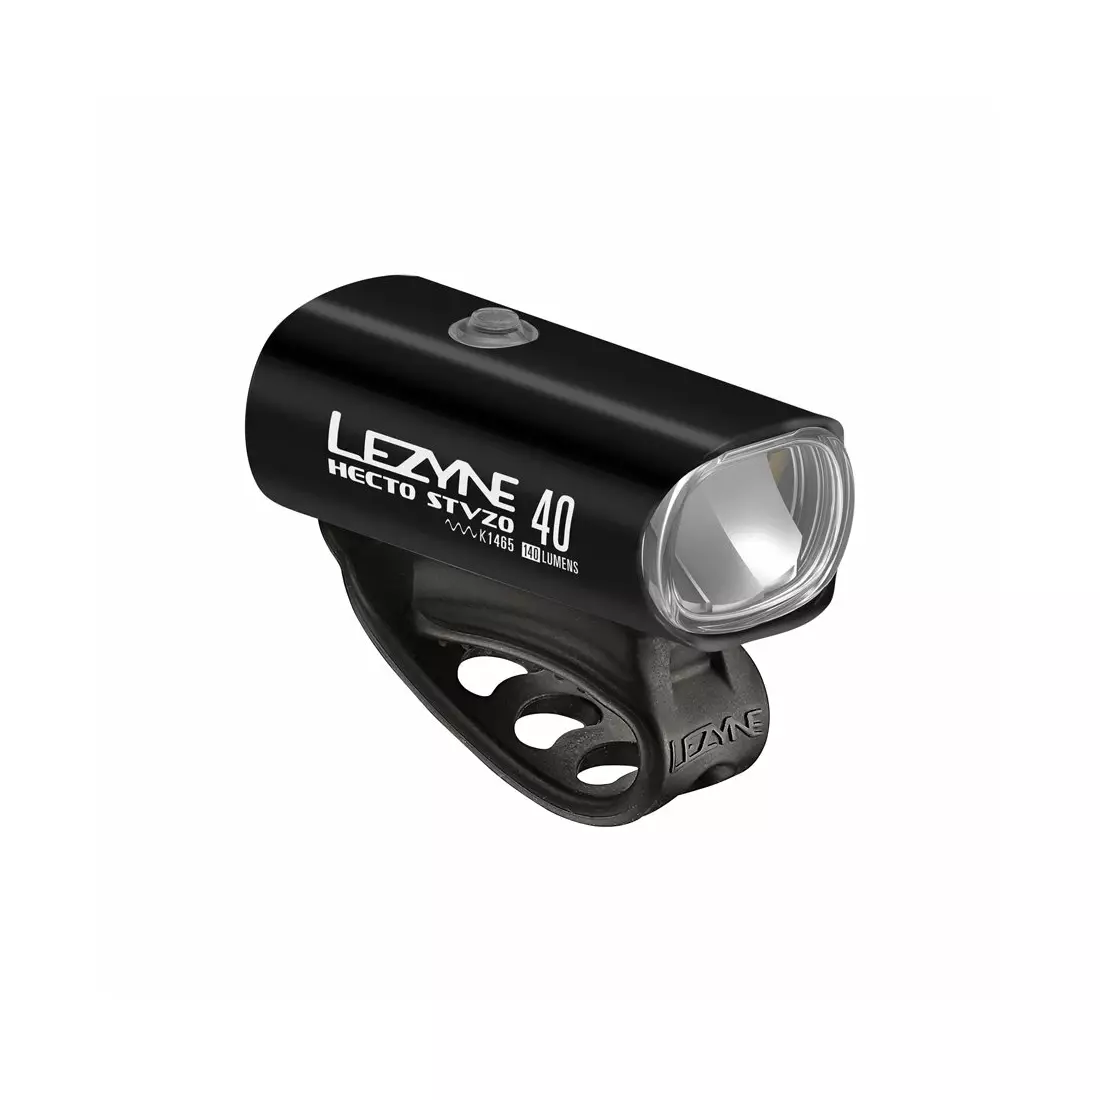 Első kerékpár lámpa LEZYNE HECTO DRIVE STVZO 40 40 lux/ 140 lumen, usb fekete(NEW)